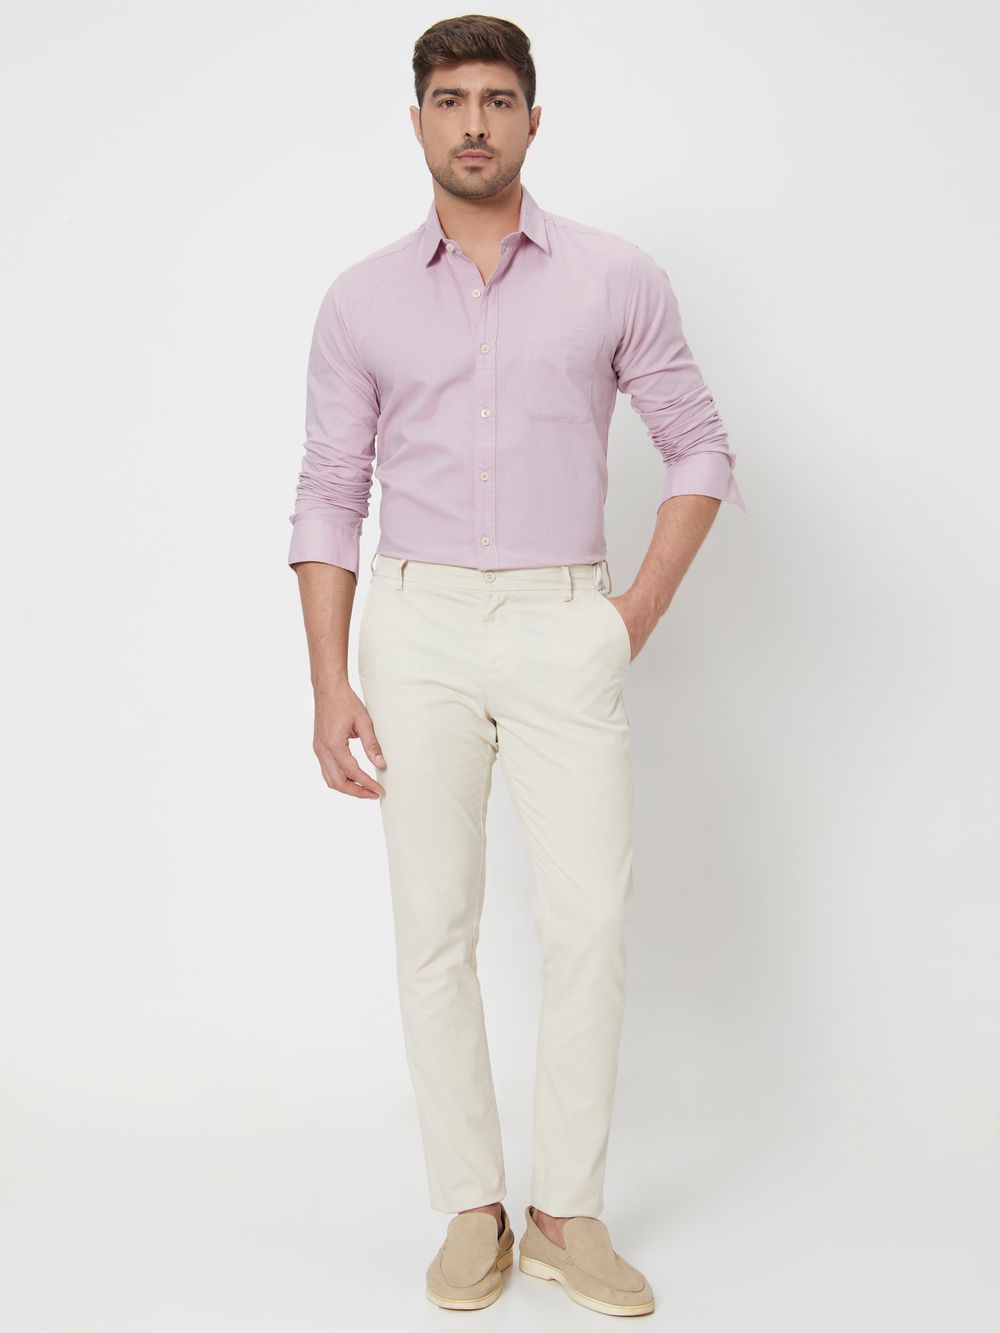 Lilac Cotton Linen Slim Fit Casual Shirt